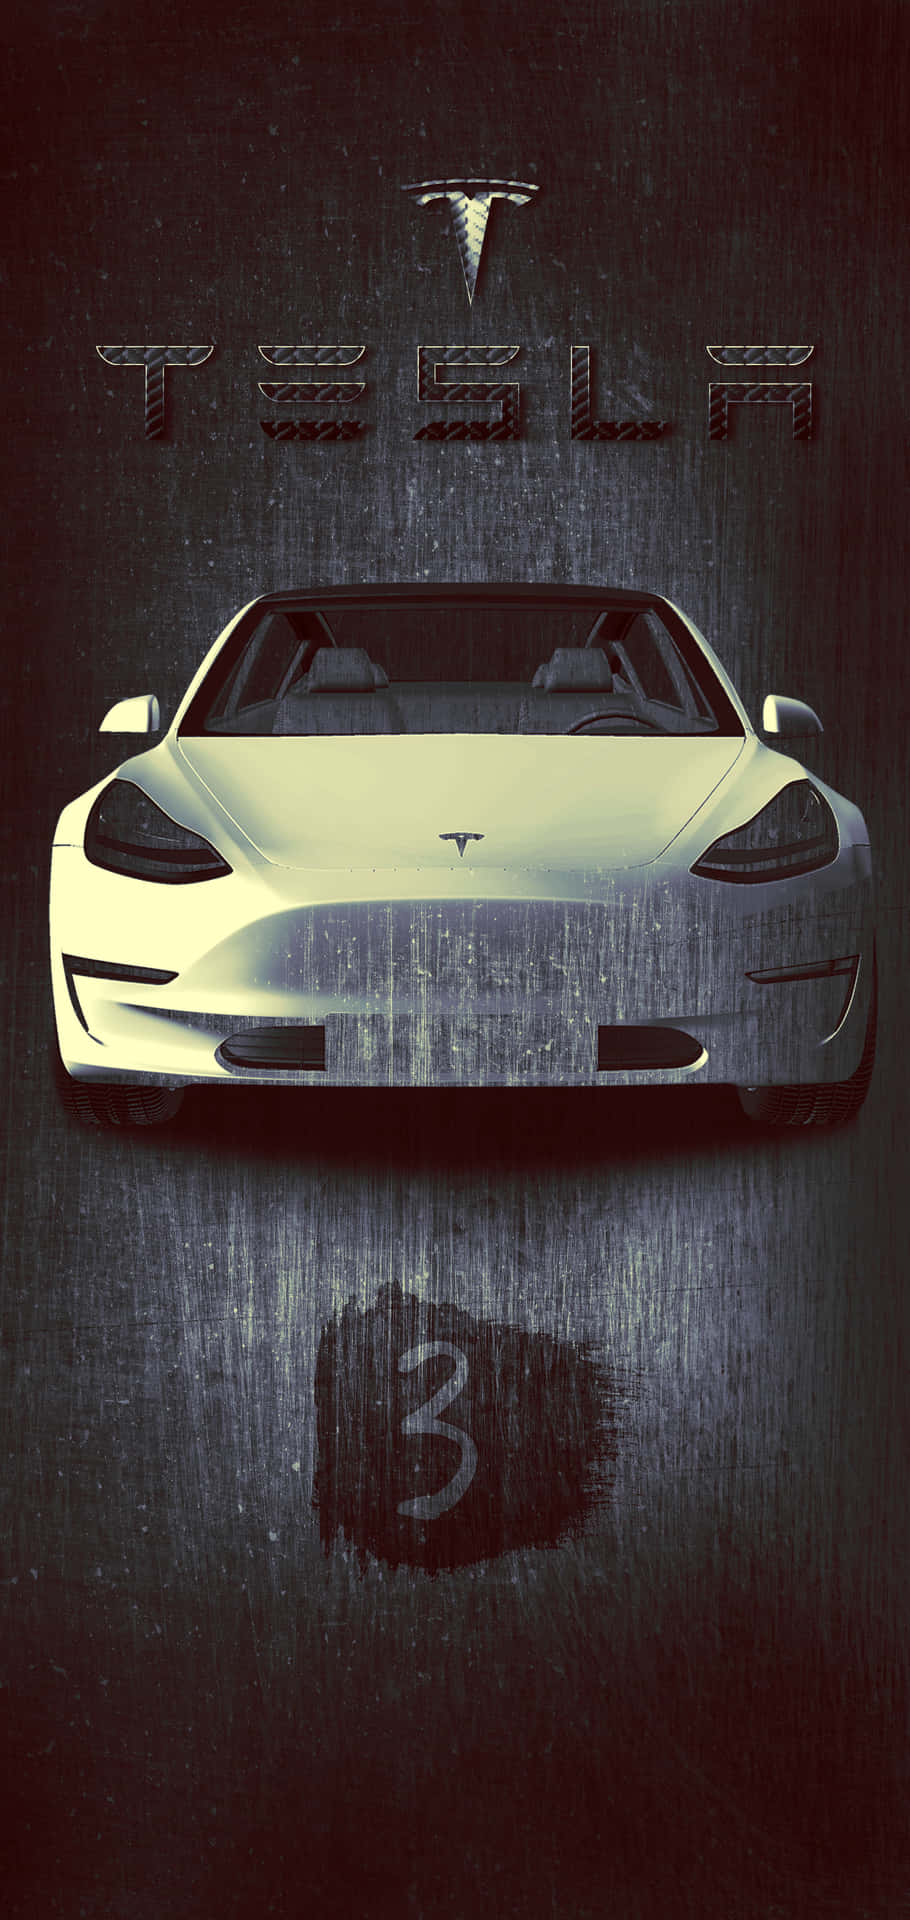 Bildladdning Av En Tesla Med En Iphone. Wallpaper